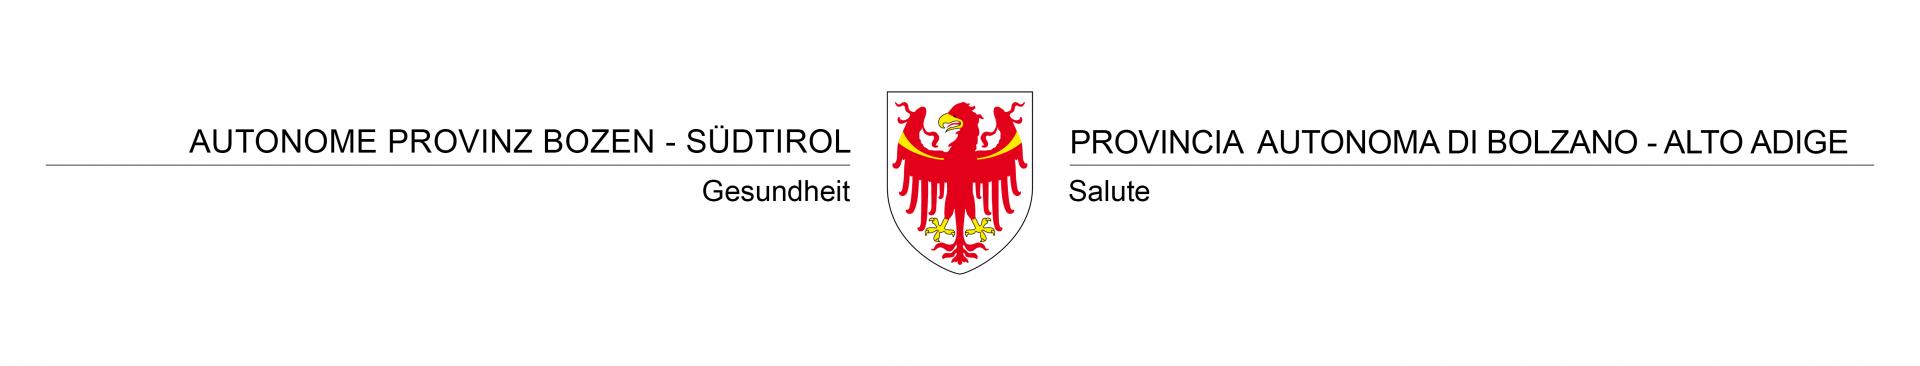 Abteilung Gesundheit - Autonome Provinz Bozen-Südtirol